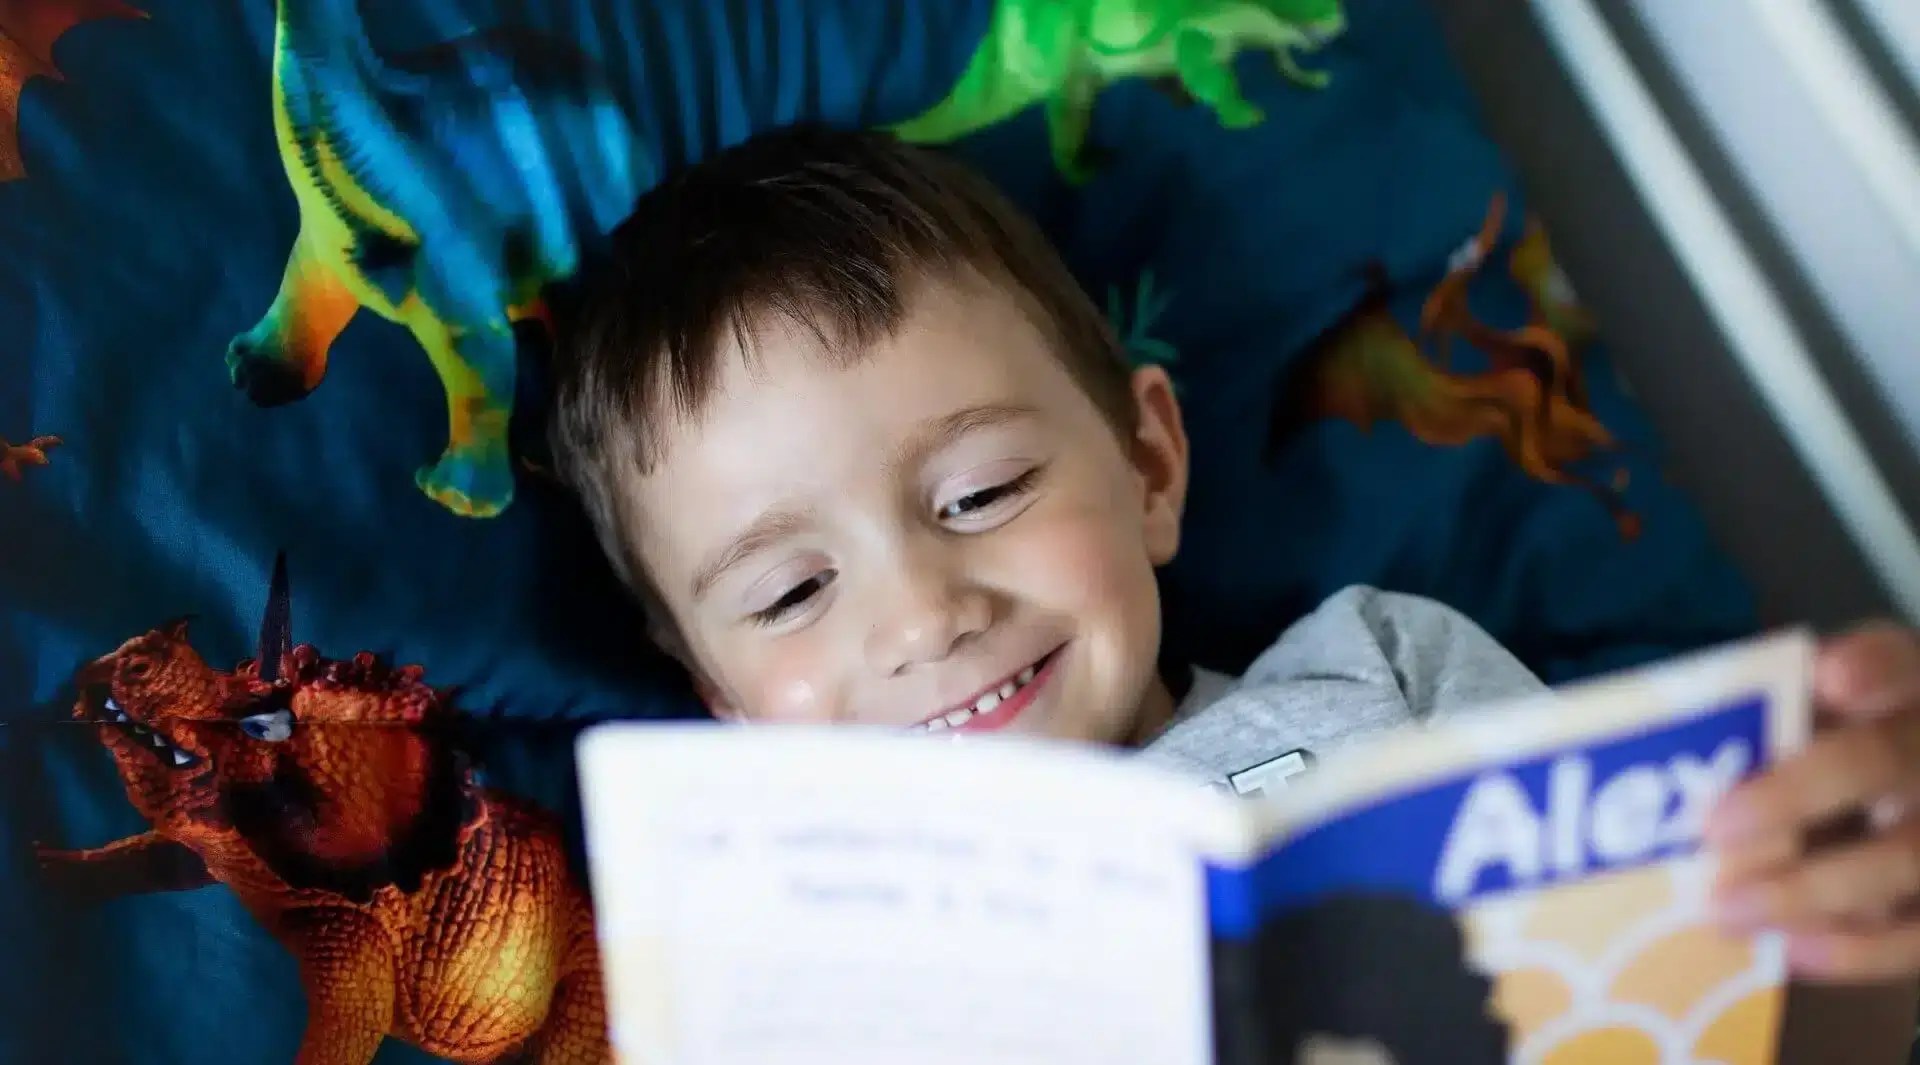 Apprendre à lire : un garçon lit un livre Facile à lire dans son lit en souriant.